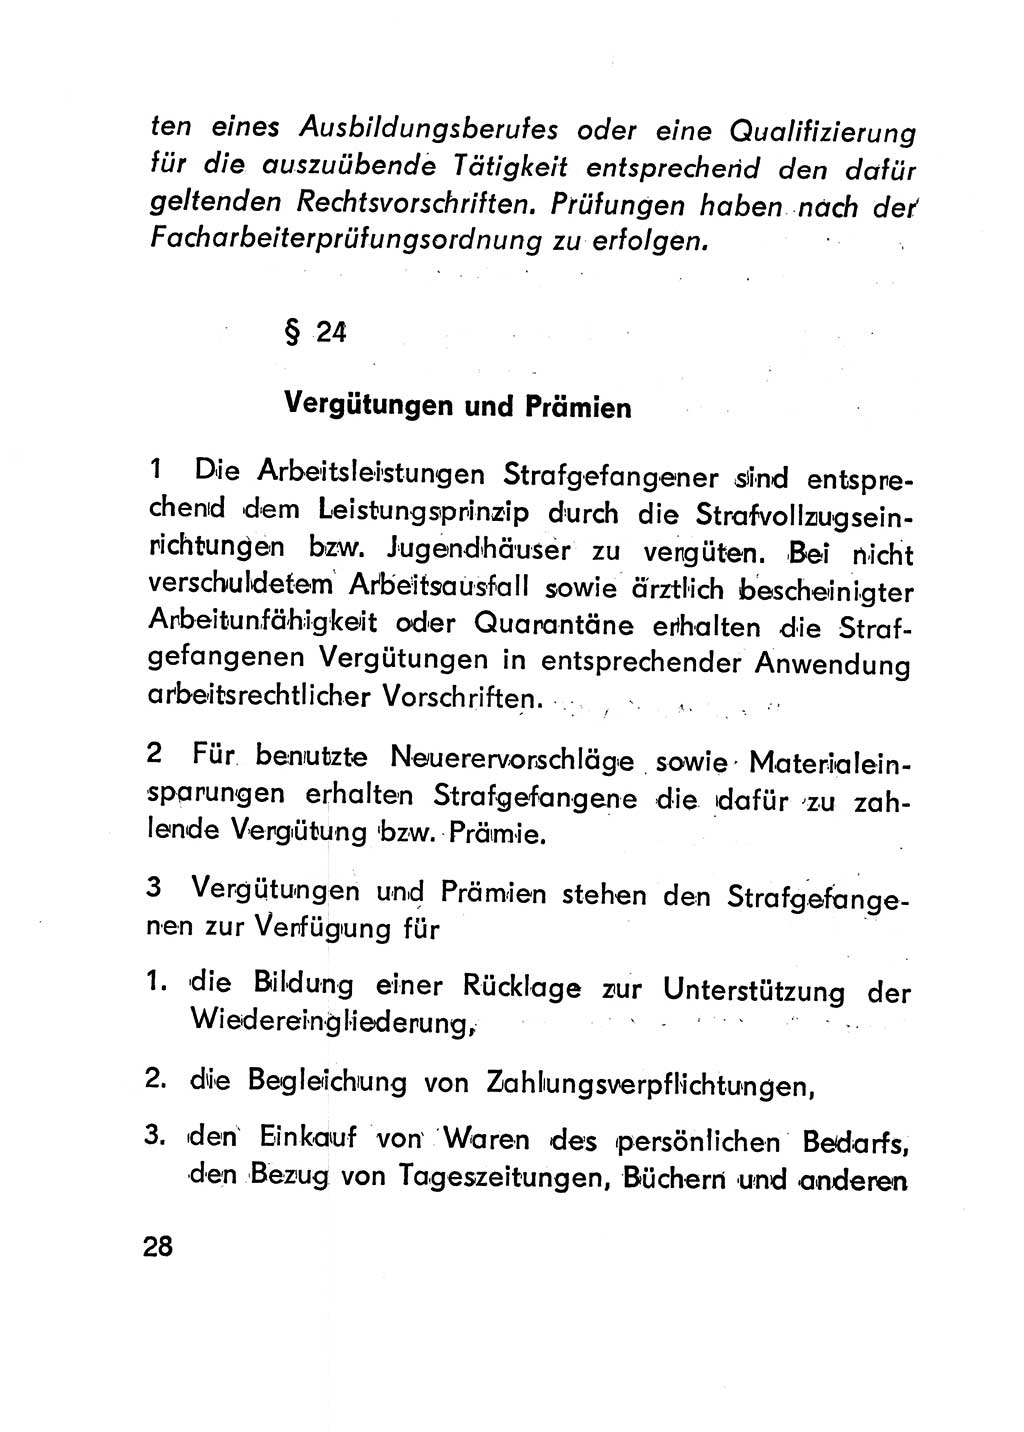 Gesetz über den Vollzug der Strafen mit Freiheitsentzug (Strafvollzugsgesetz) - StVG - [Deutsche Demokratische Republik (DDR)] 1977, Seite 28 (StVG DDR 1977, S. 28)